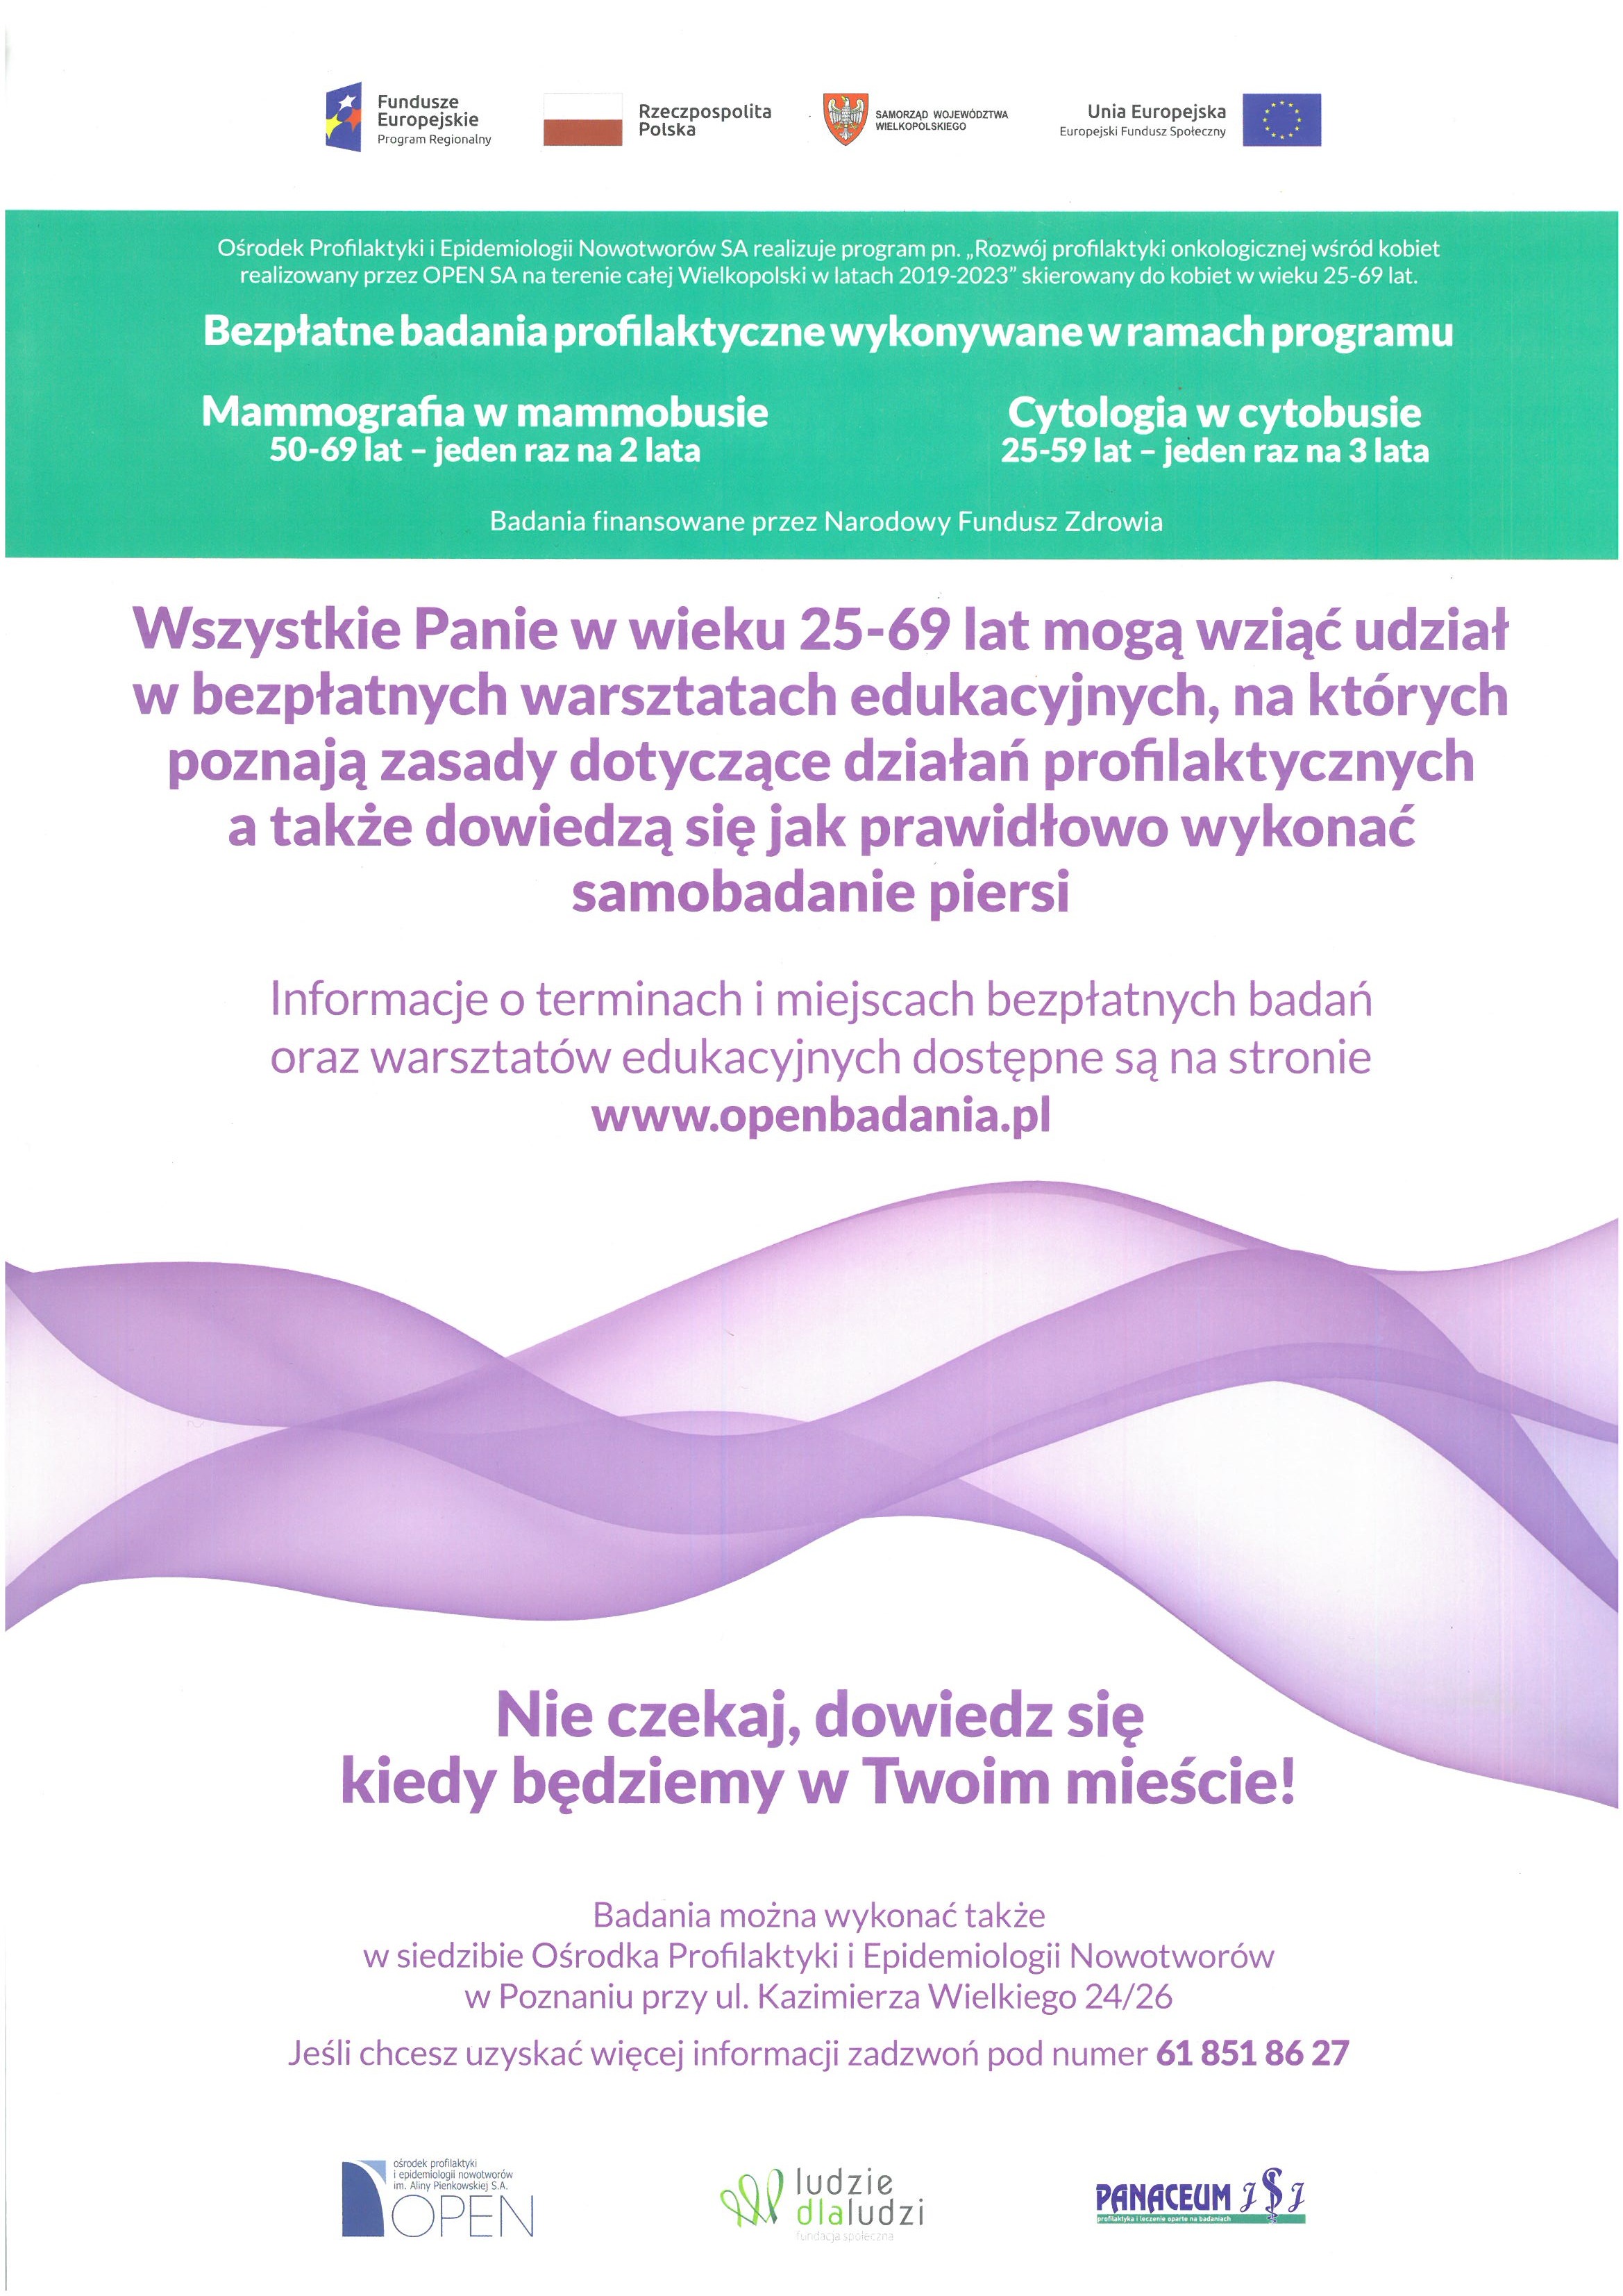 Bezpłatne badania mammograficzne i cytologiczne